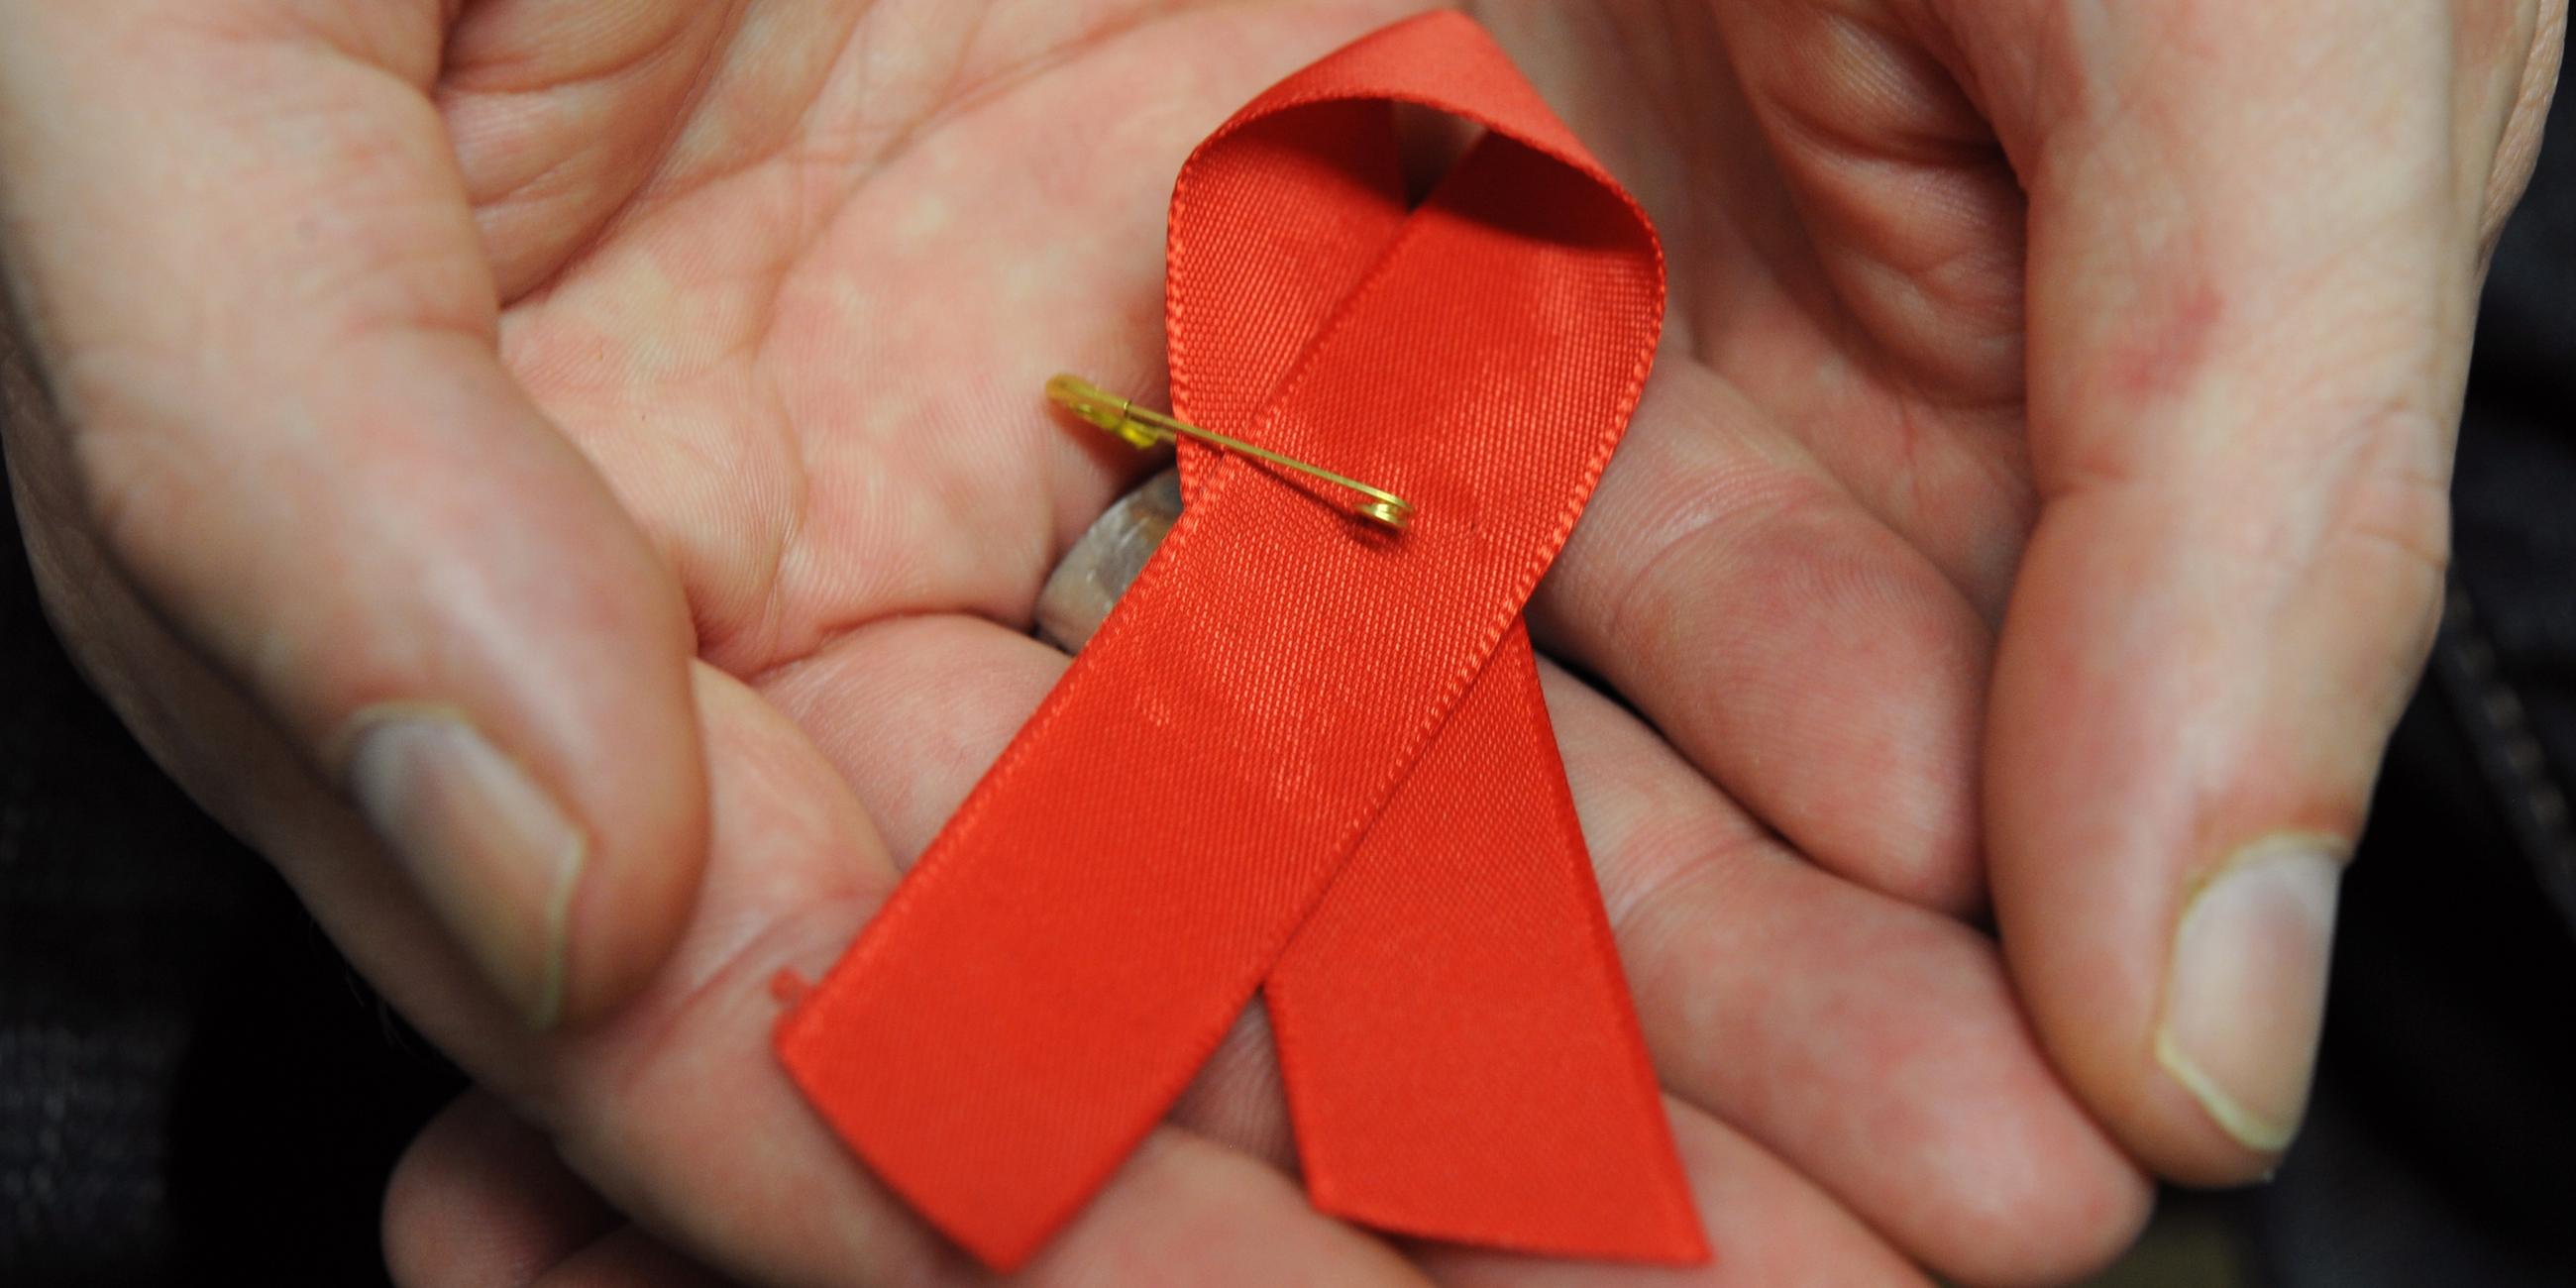 Hessen, Frankfurt/Main: Ein mit dem HI-Virus infizierter Mann hält eine rote Schleife als Symbol der Solidarität mit HIV-Positiven und Aids-Kranken.